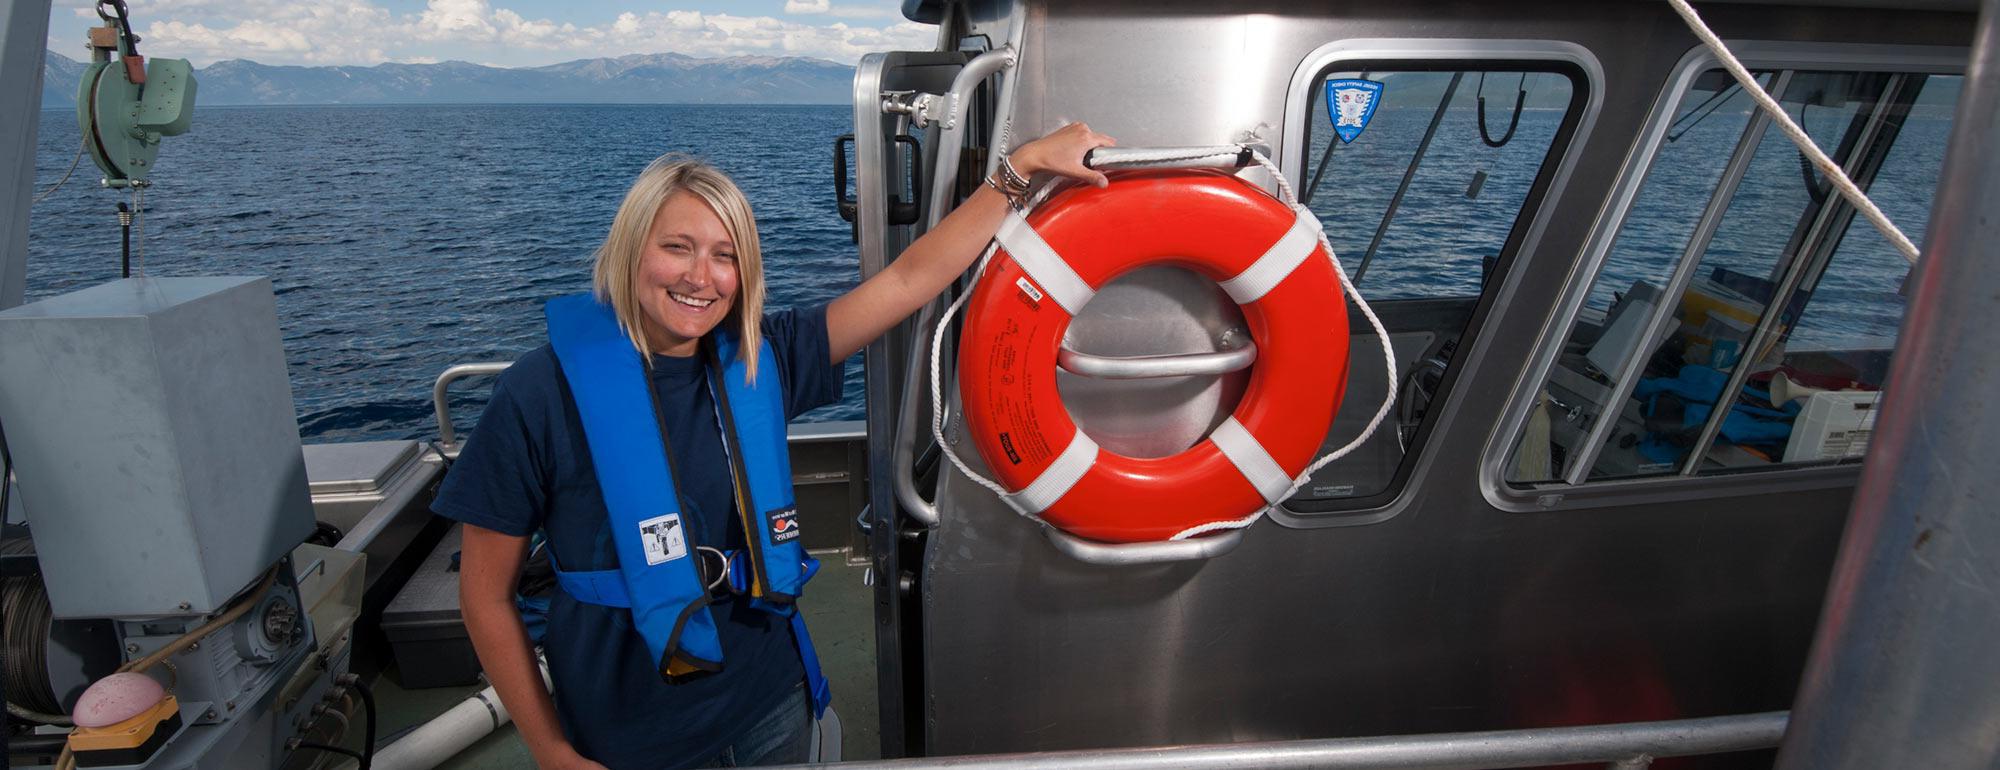 一名女研究员在太浩湖的一艘研究船上摆姿势